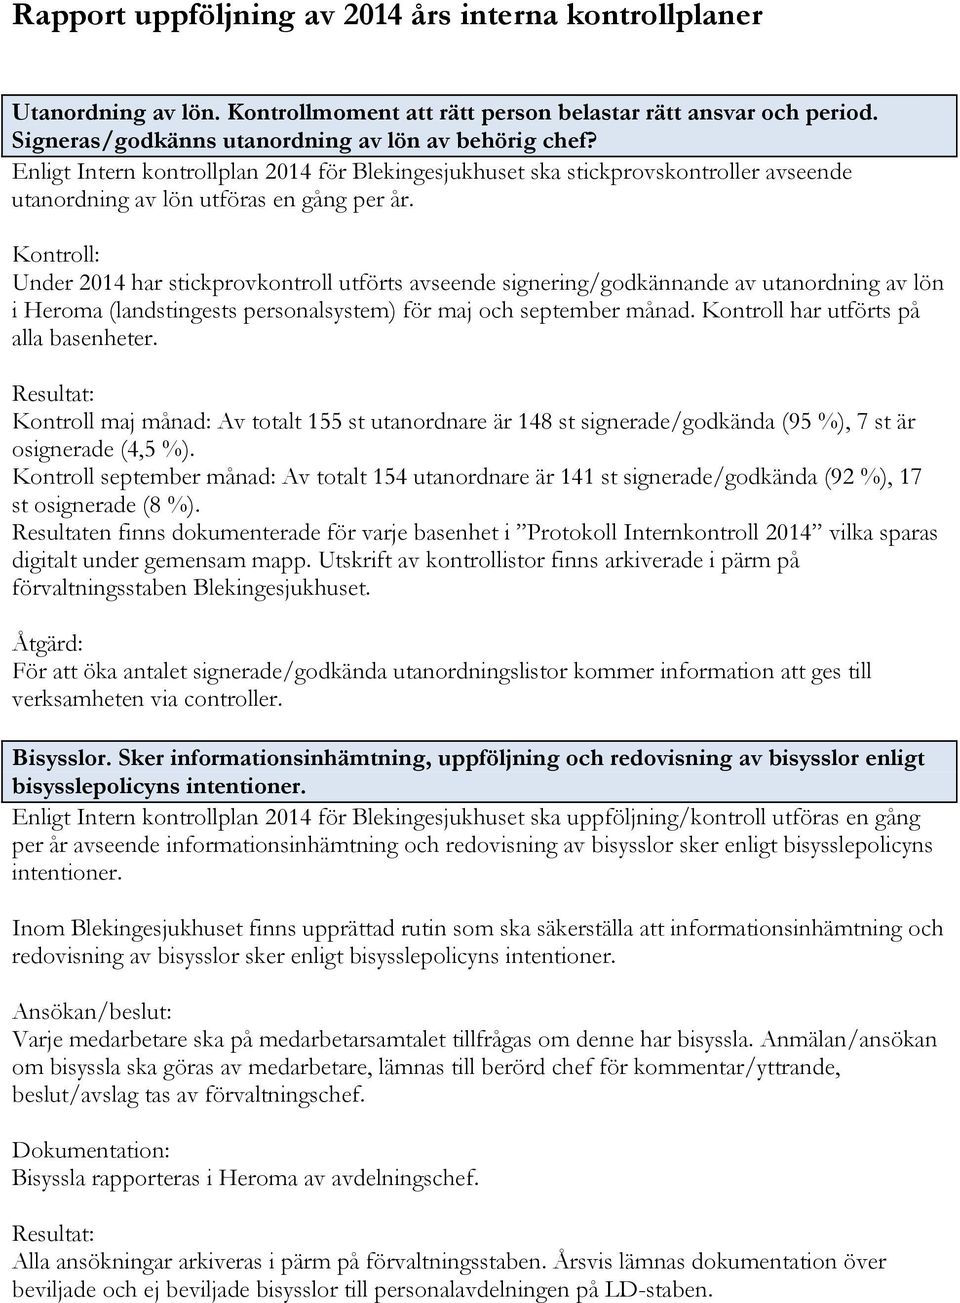 Under 2014 har stickprovkontroll utförts avseende signering/godkännande av utanordning av lön i Heroma (landstingests personalsystem) för maj och september månad.